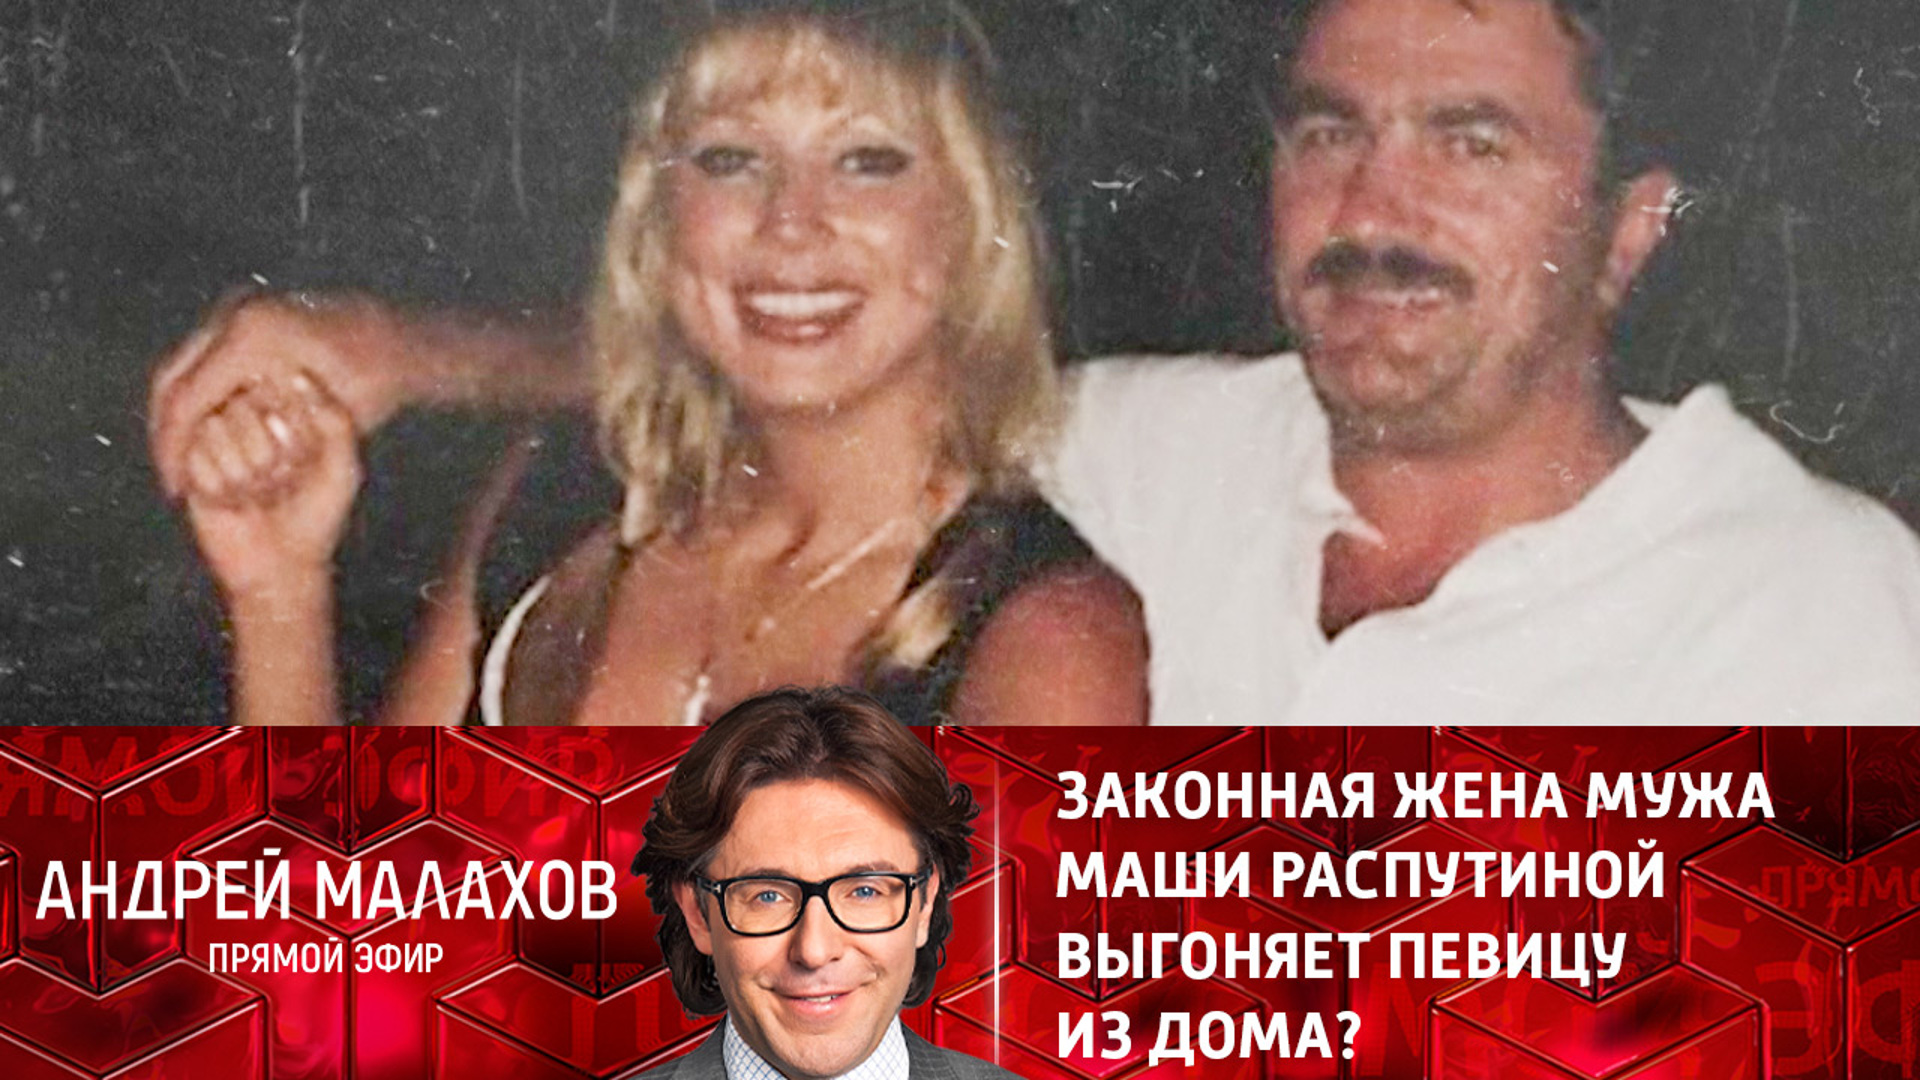 Андрей Малахов прямой эфир Маша Распутина